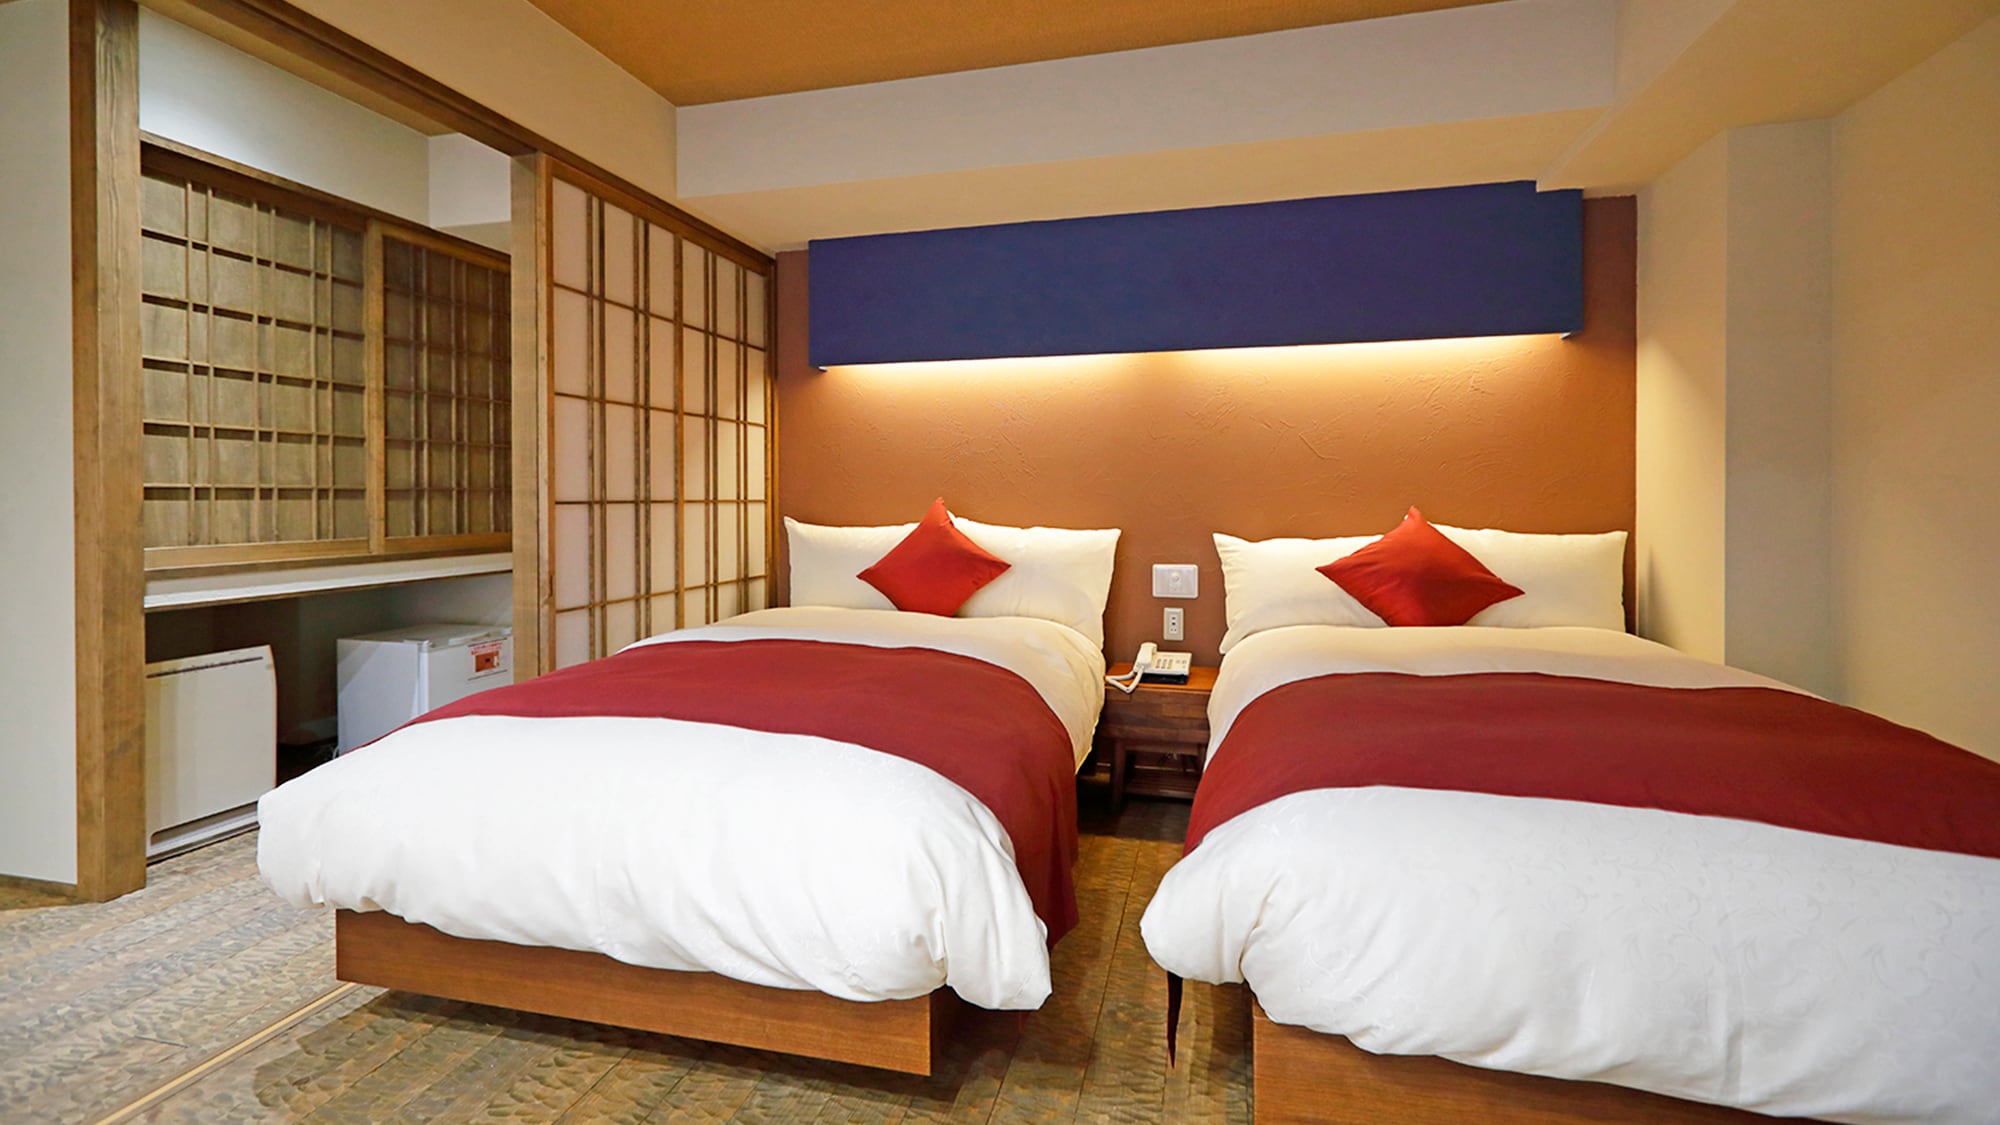 노천탕이있는 객실] 일본식 현대식! 노천탕이 있는 객실의 예. 푹신한 침실의 객실 유형.